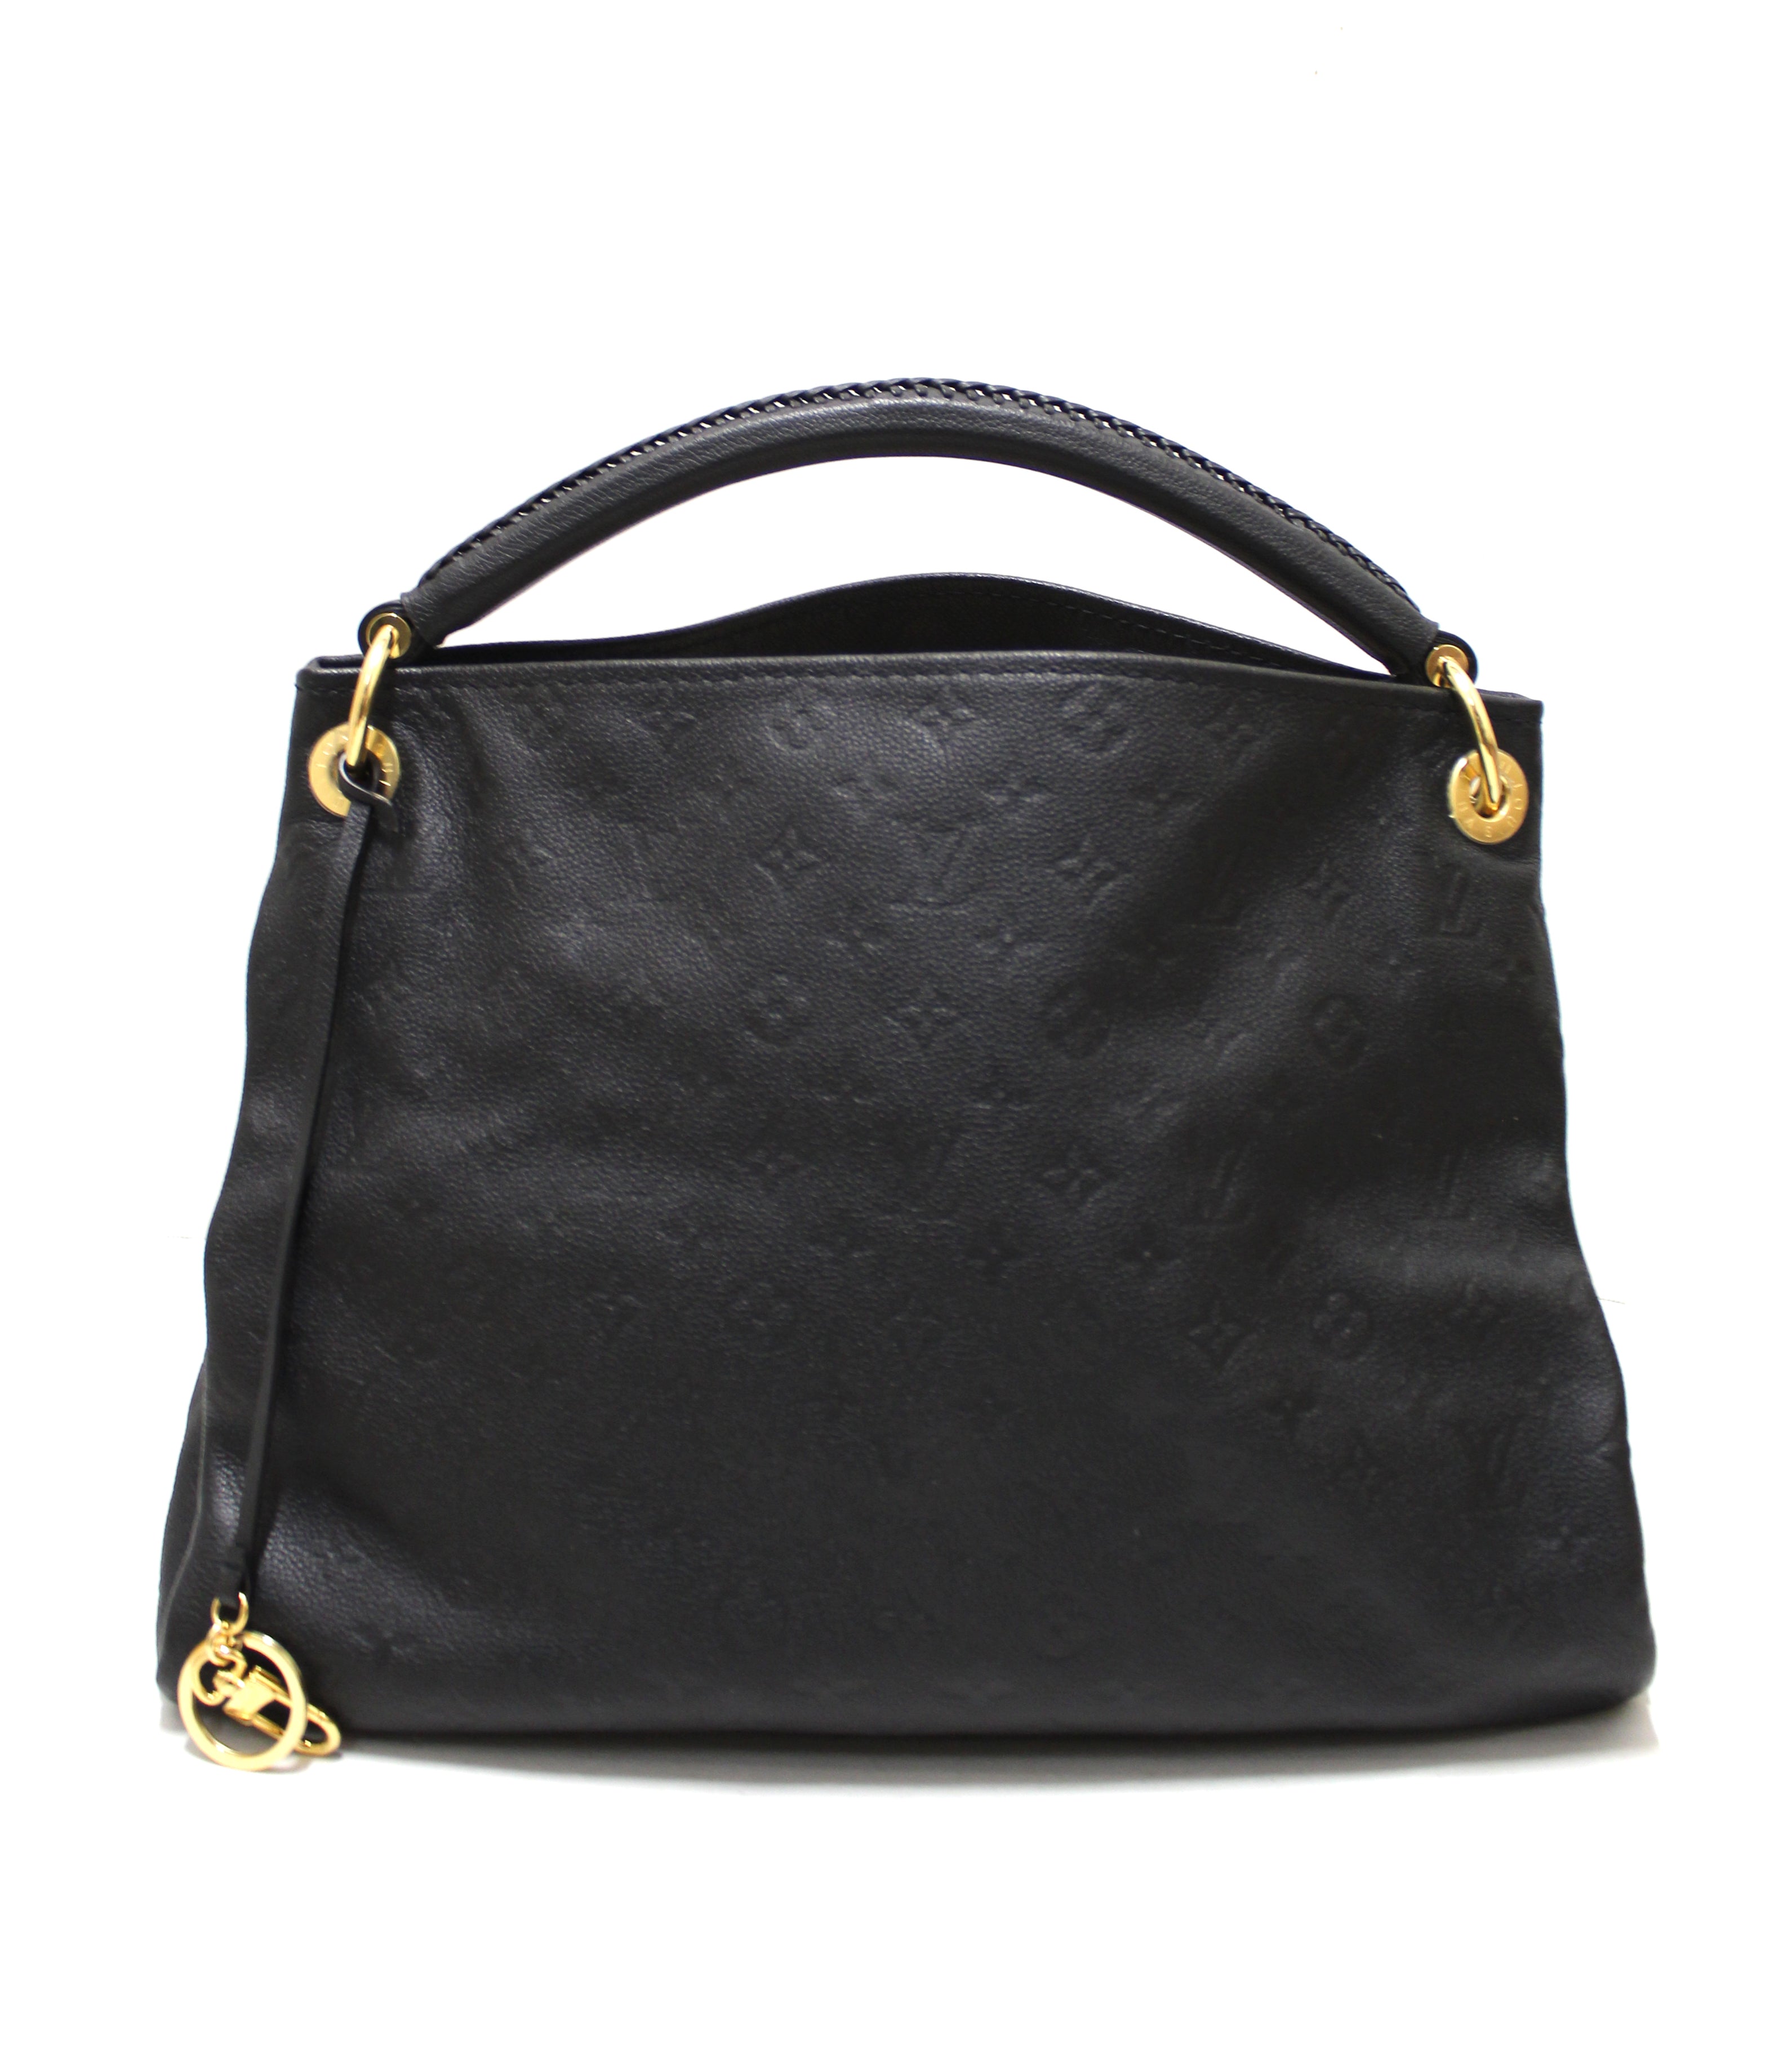 Louis Vuitton Artsy shopping bag in dark brown empreinte monogram leather